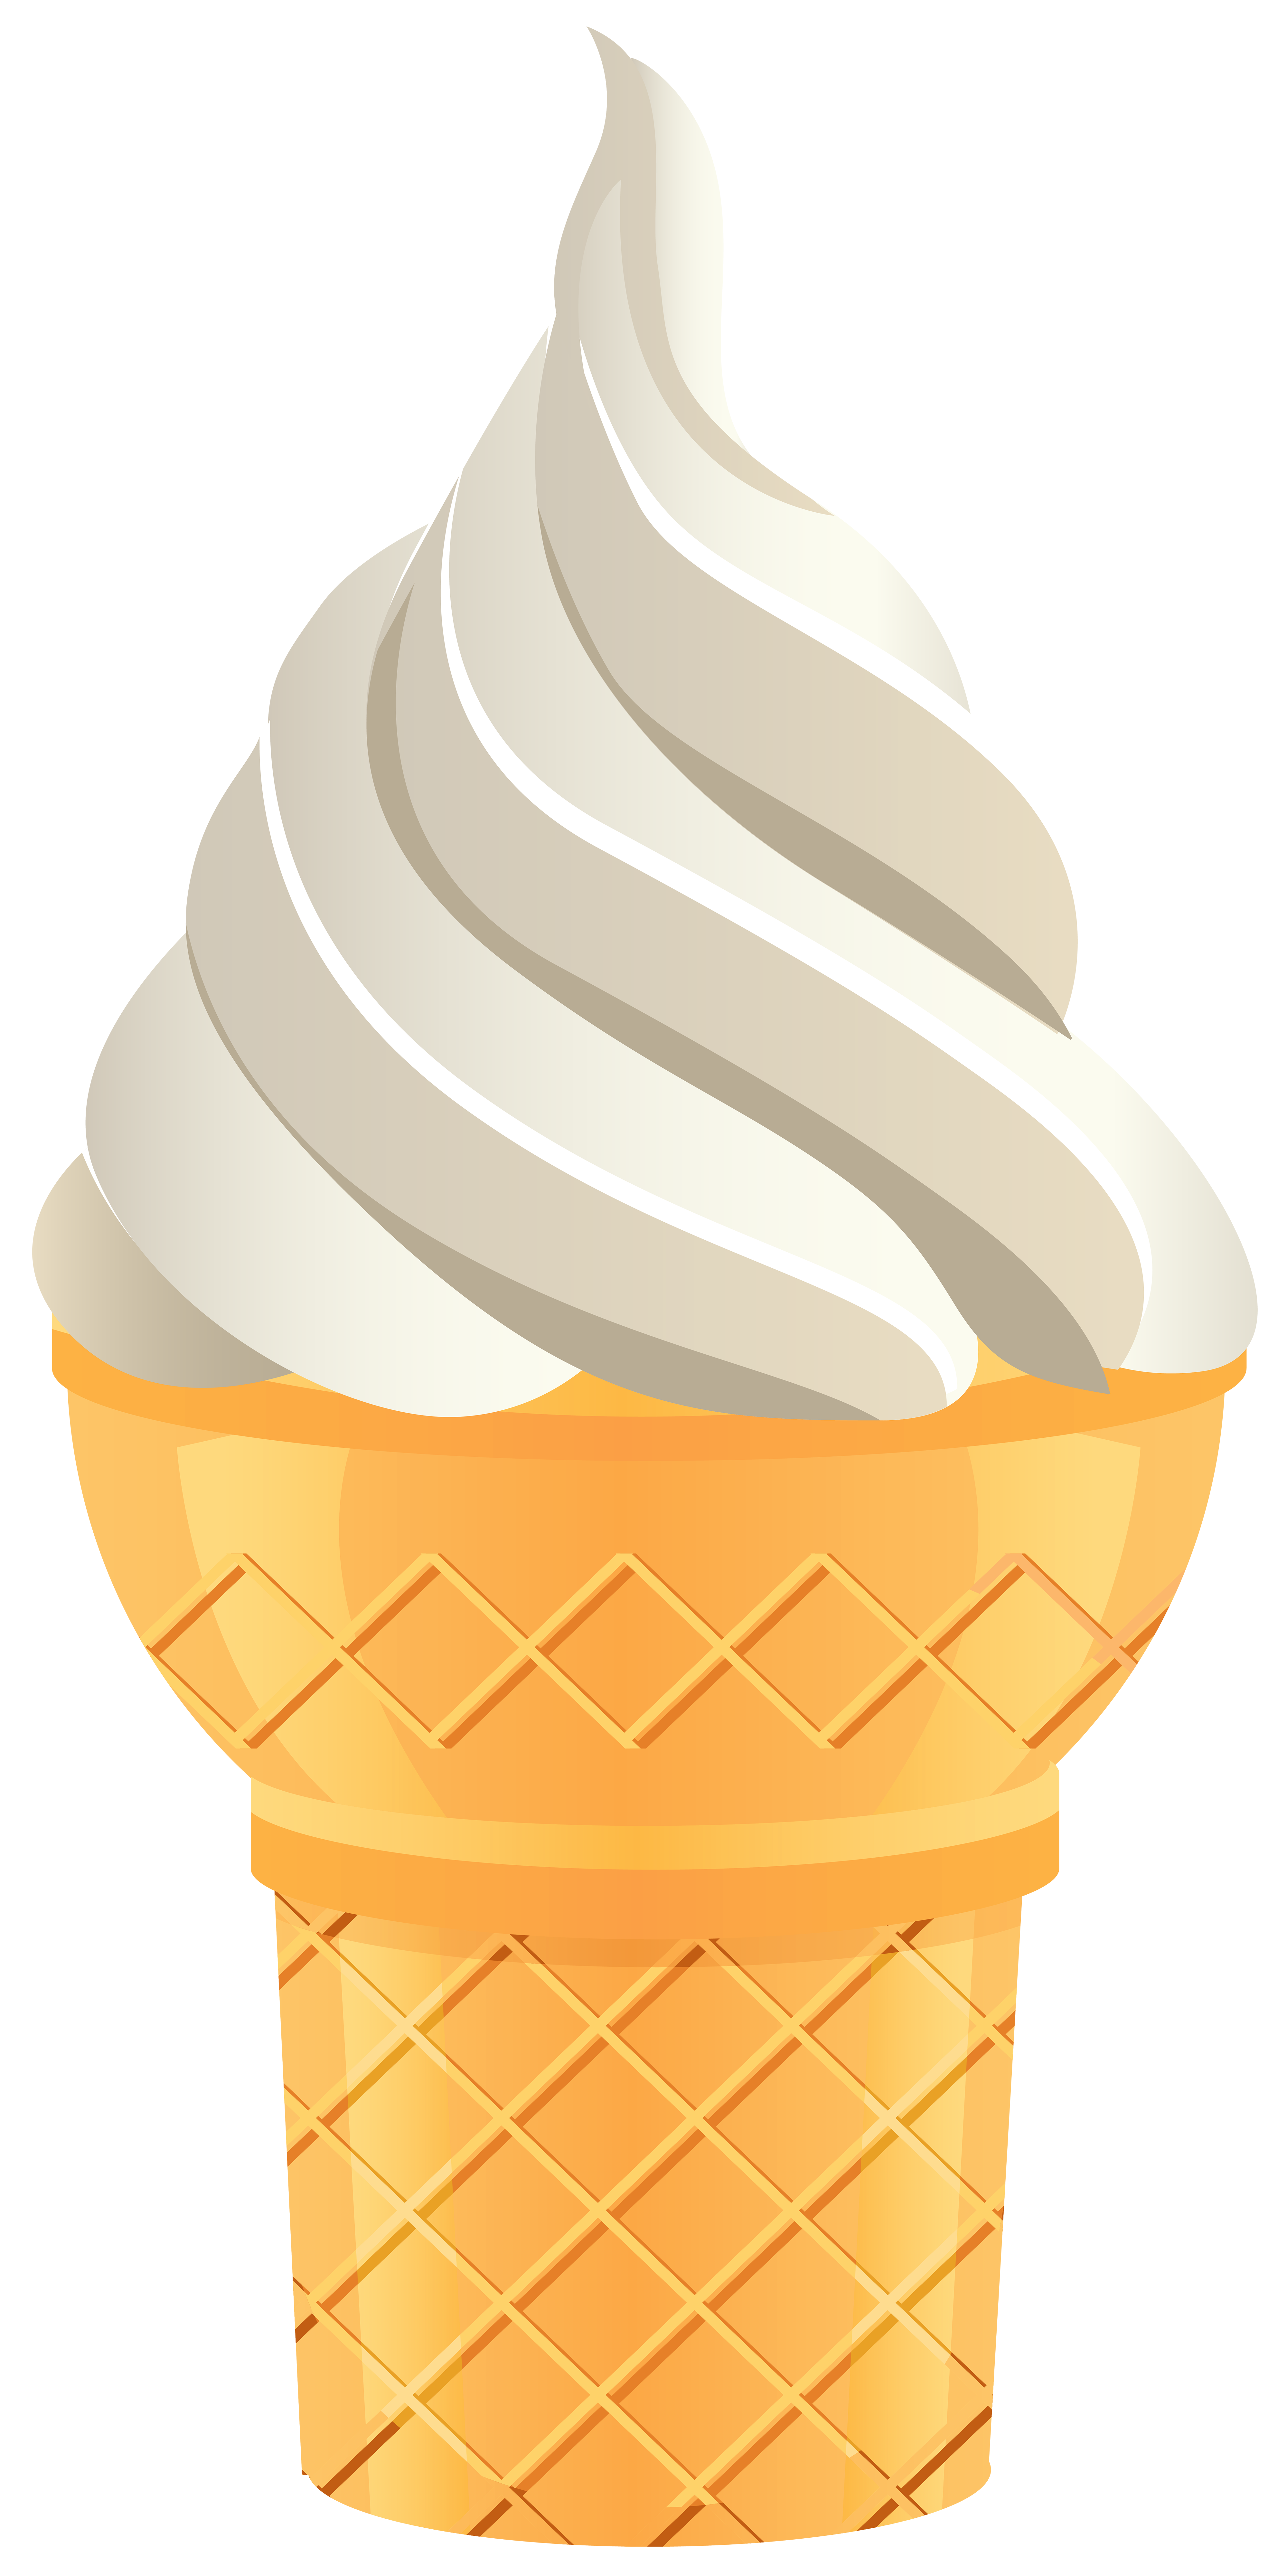 vanilla ice cream cone clipart - photo #37